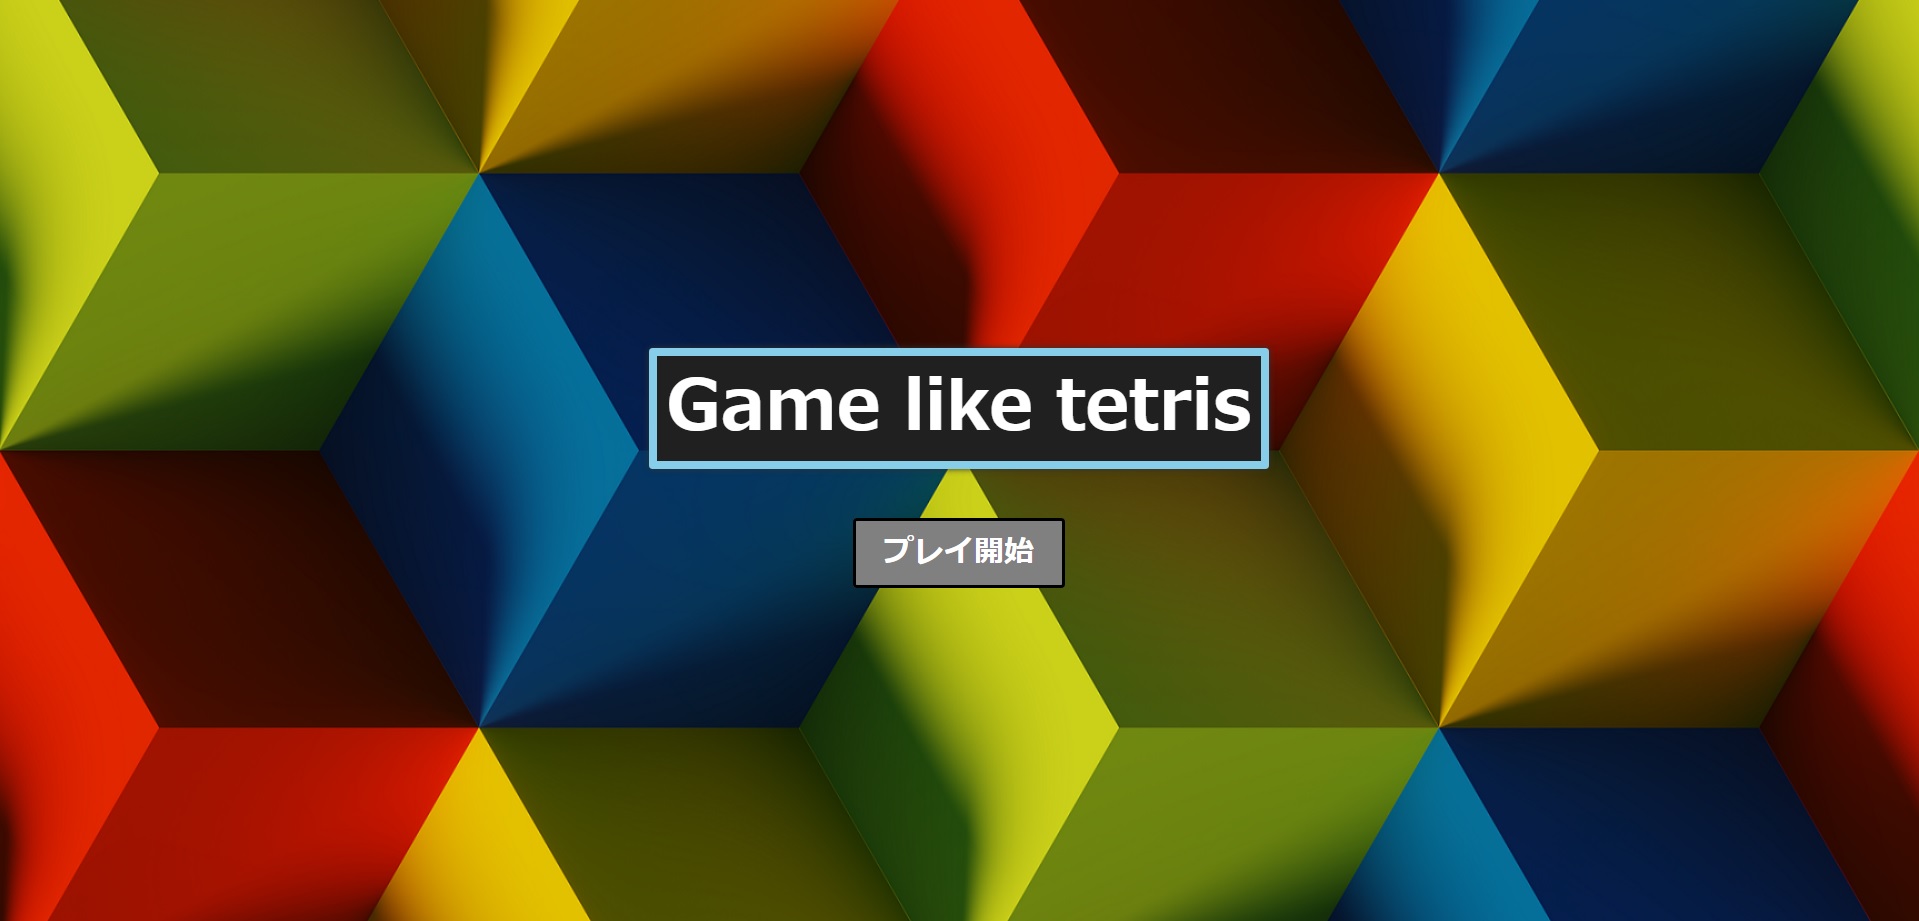 Game like tetris